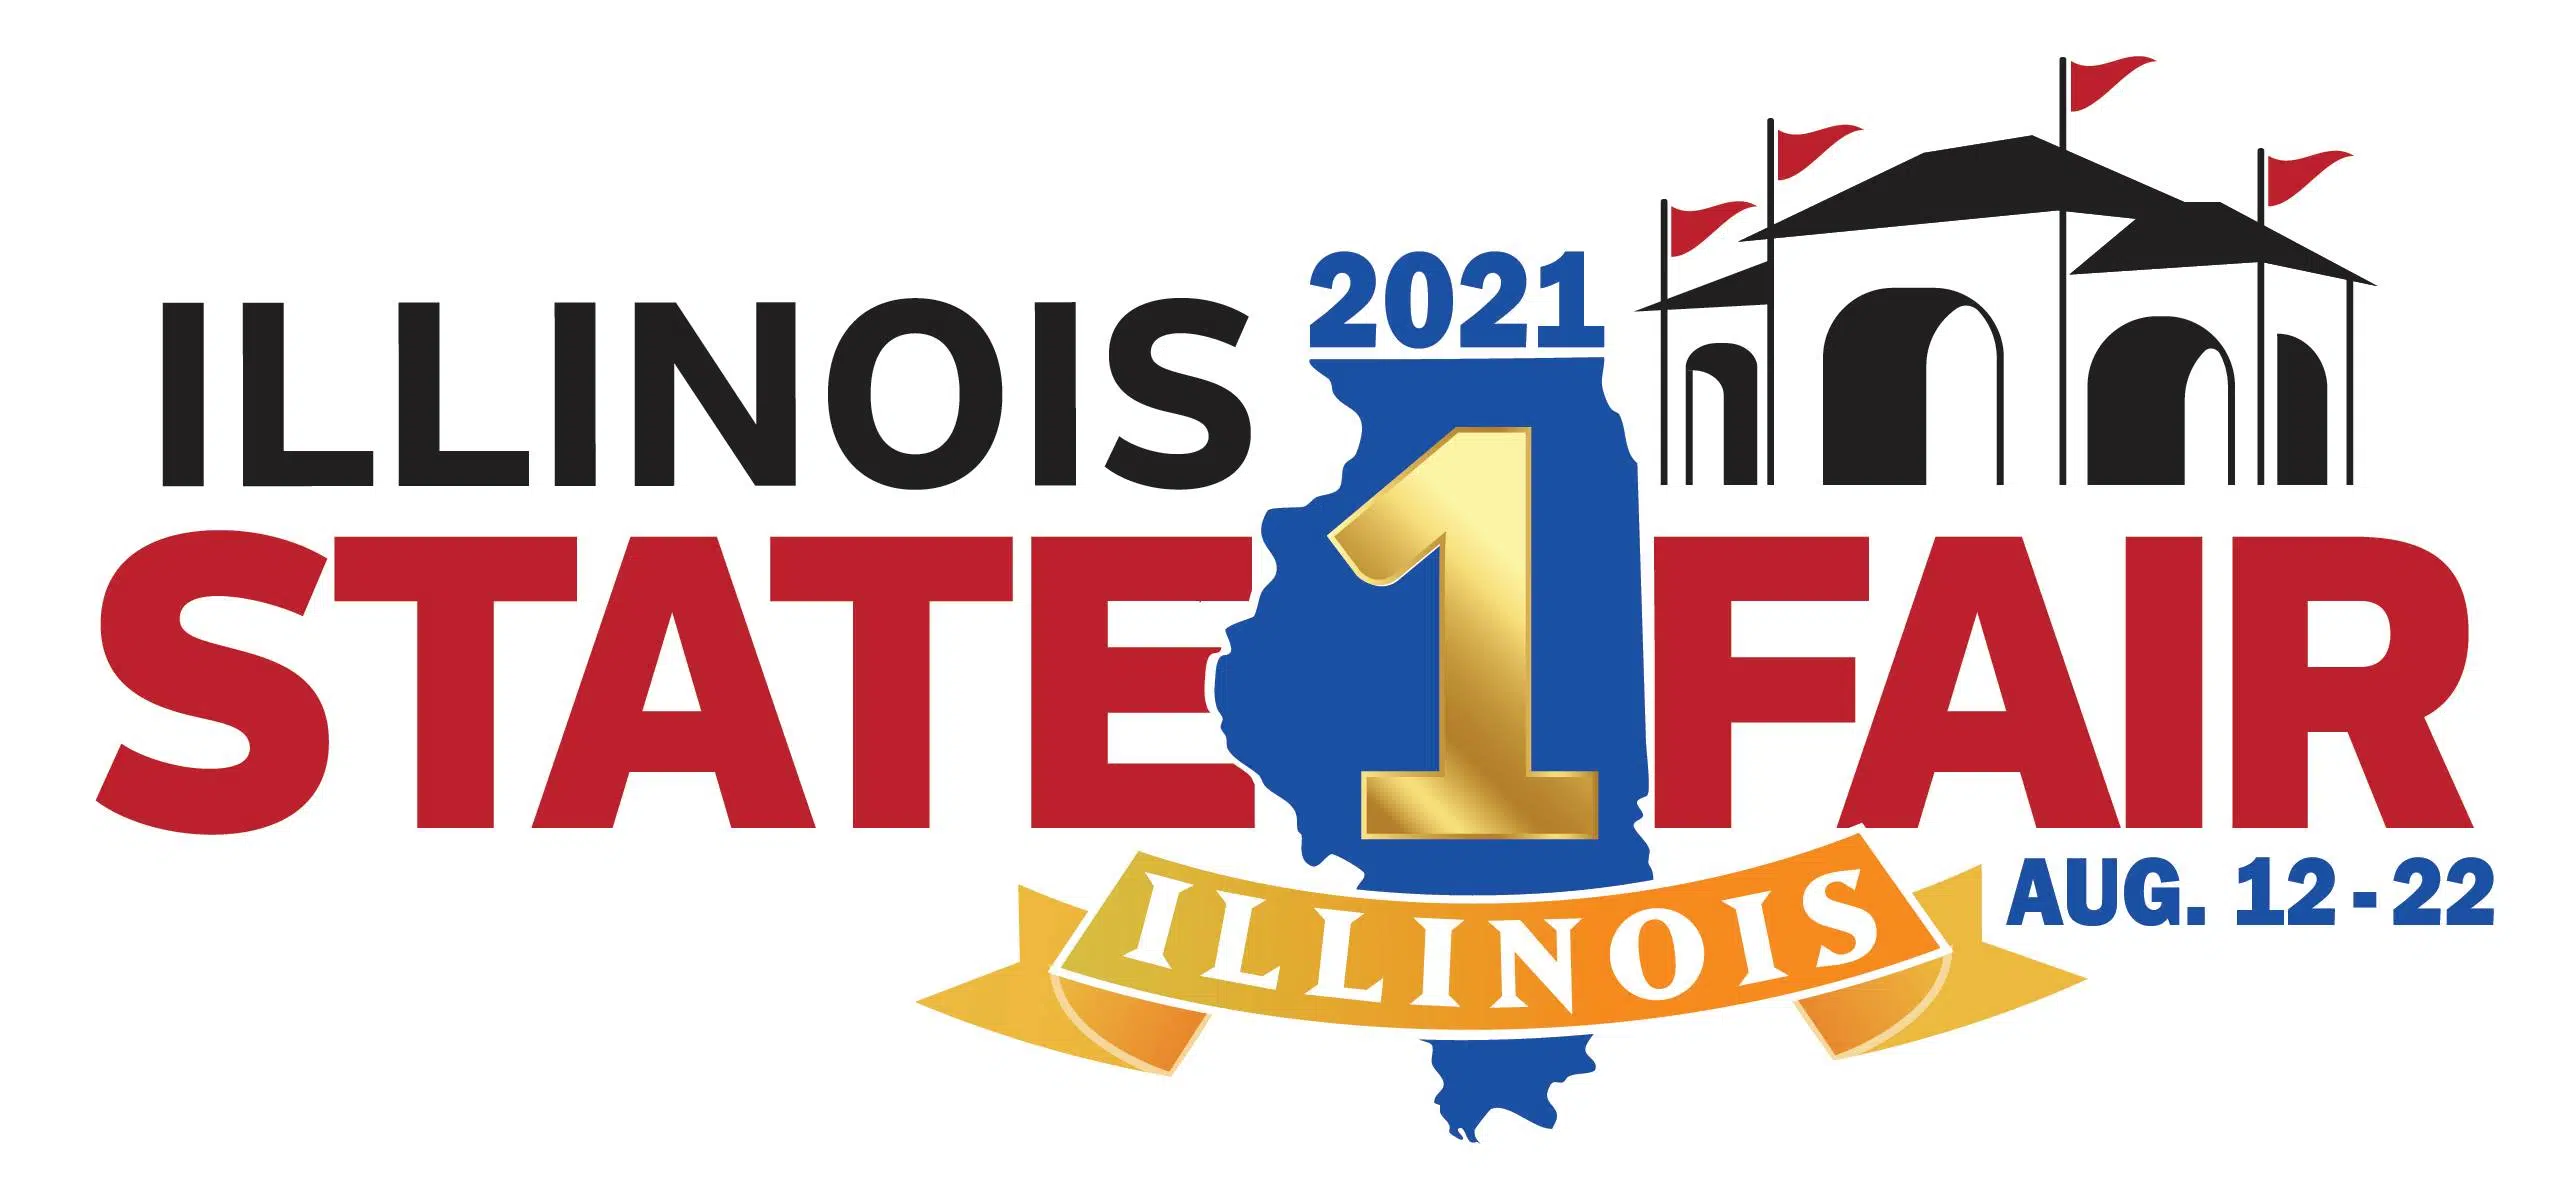 illinois state fair 2021 logo